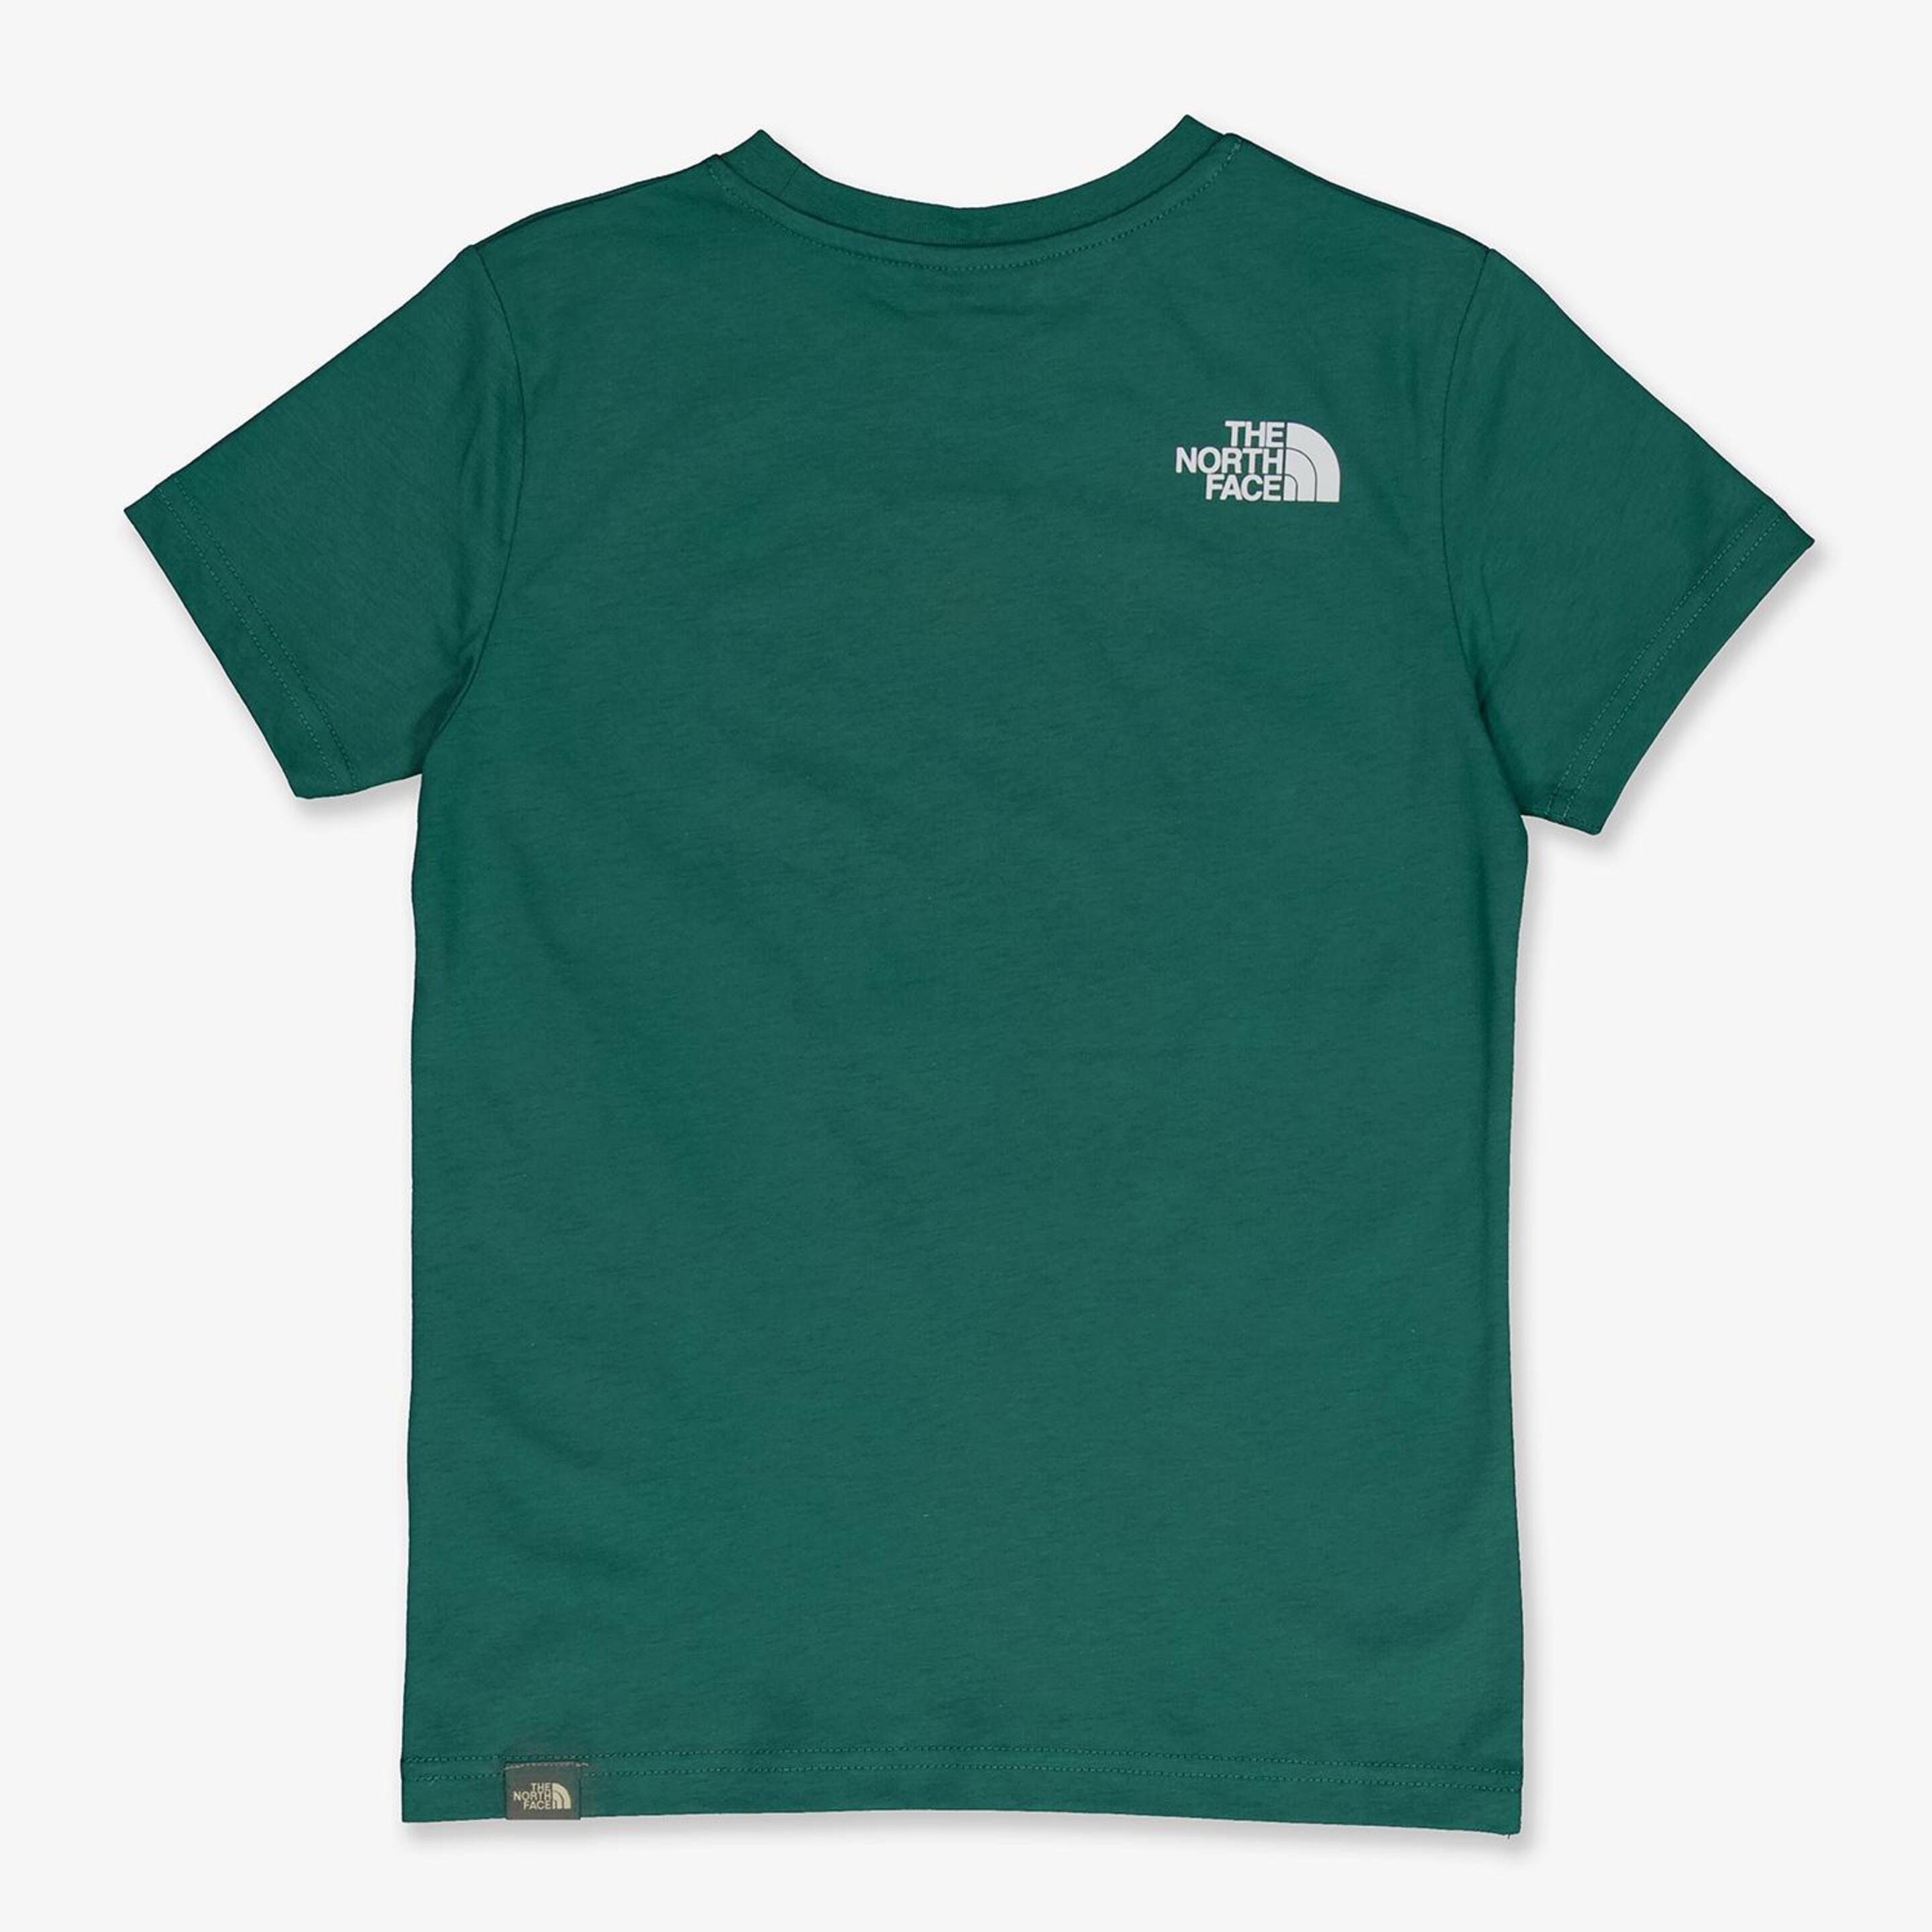 North Face Redbox - Verde - Camiseta Niño